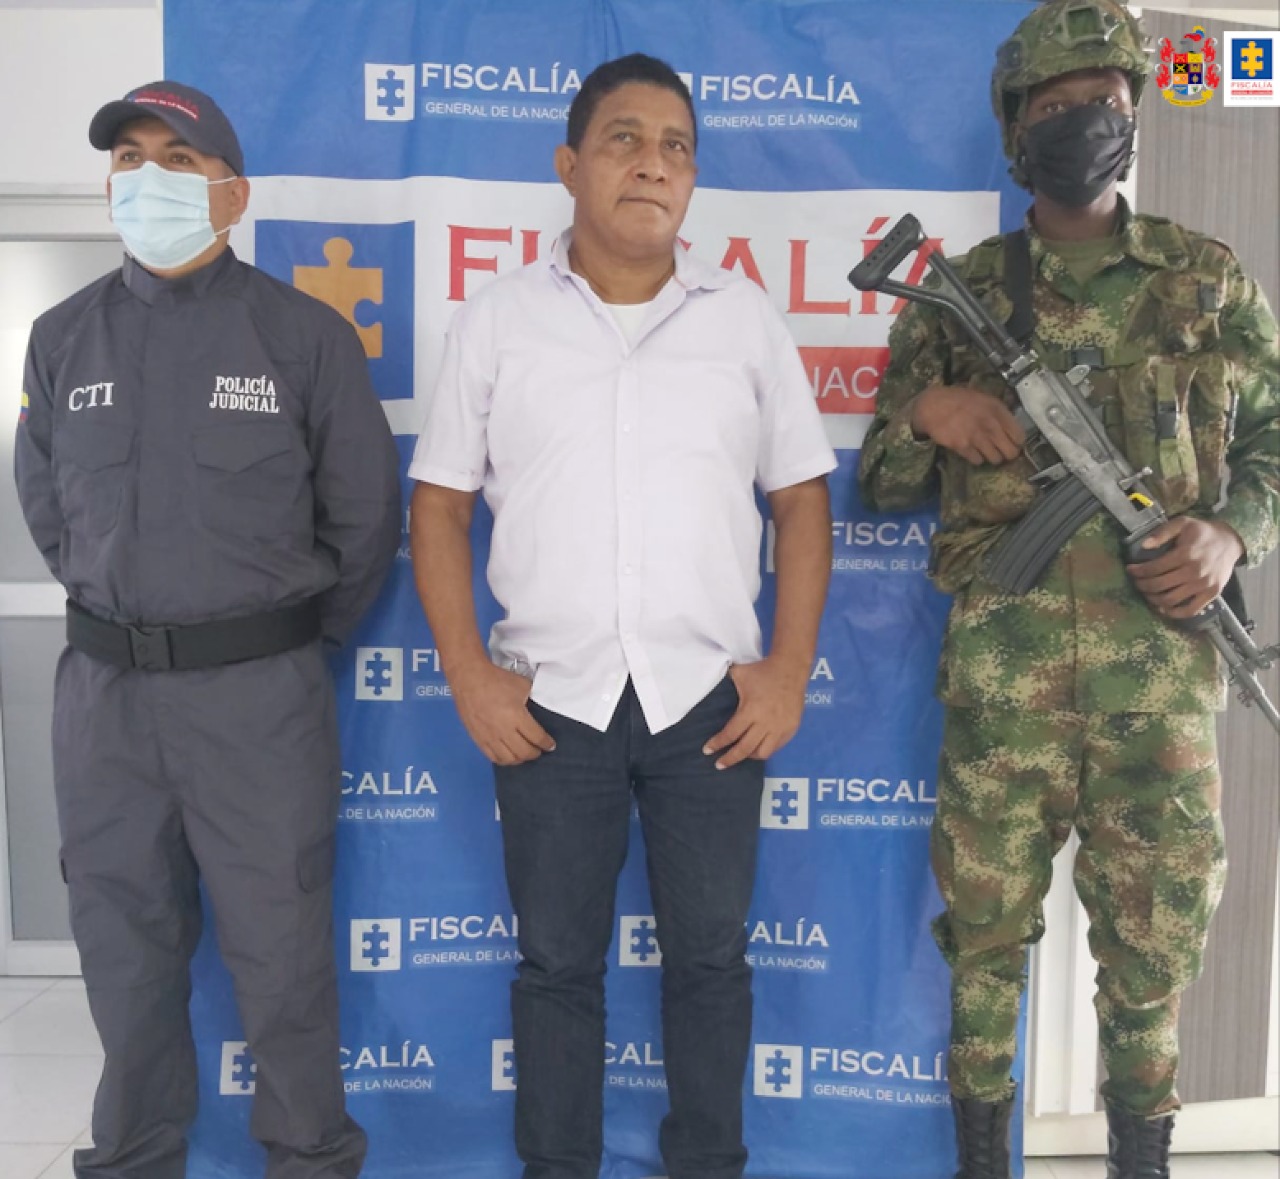 El alcalde de El Charco, Nariño, y asesor financiero judicializados por presuntos actos de corrupción en contratación. Foto: Fiscalía